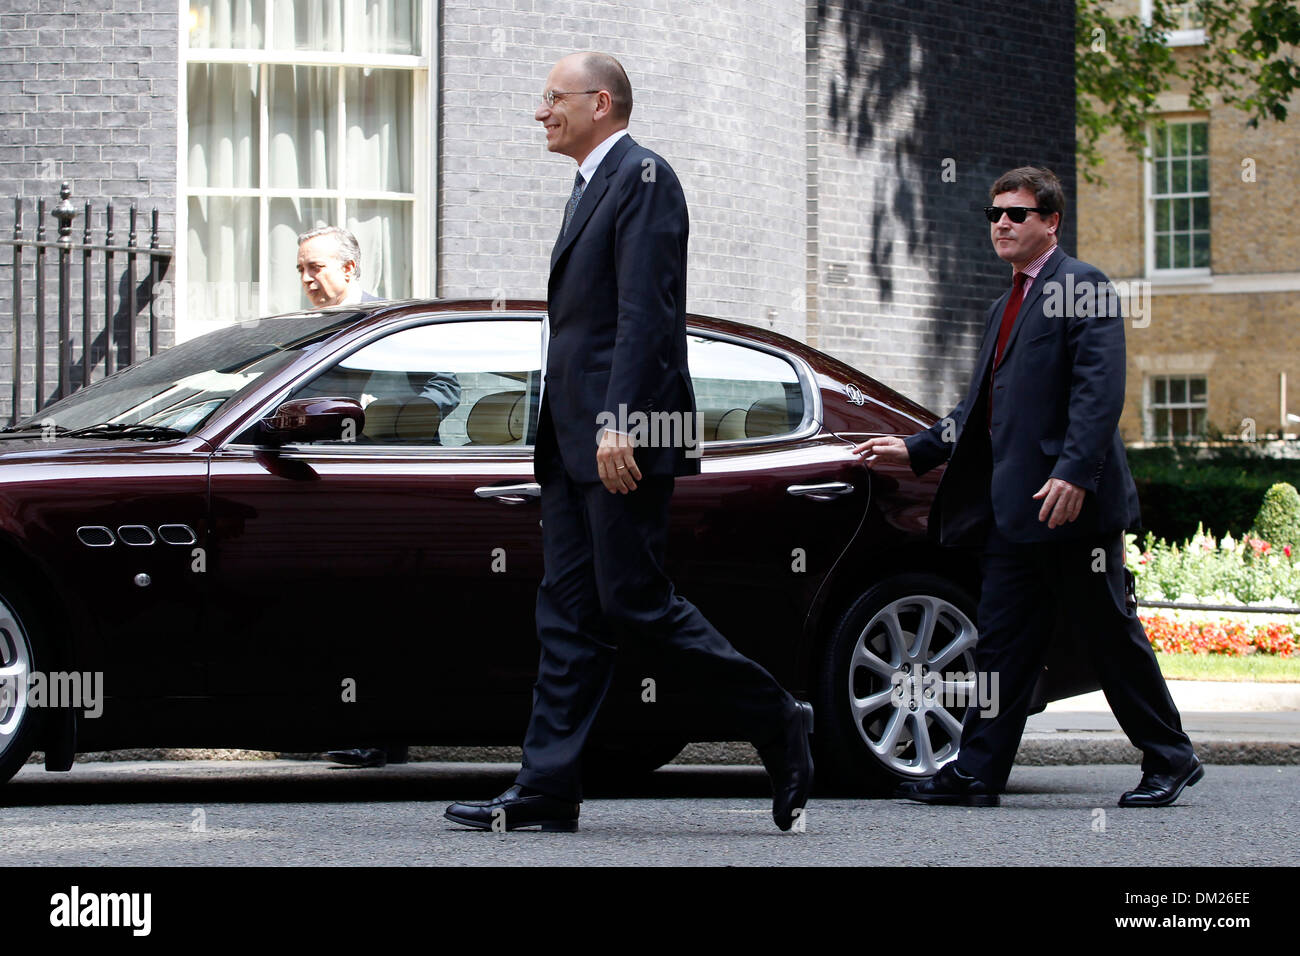 Primo Ministro italiano Enrico Letta (R) stringe la mano con il Primo Ministro britannico David Cameron Foto Stock